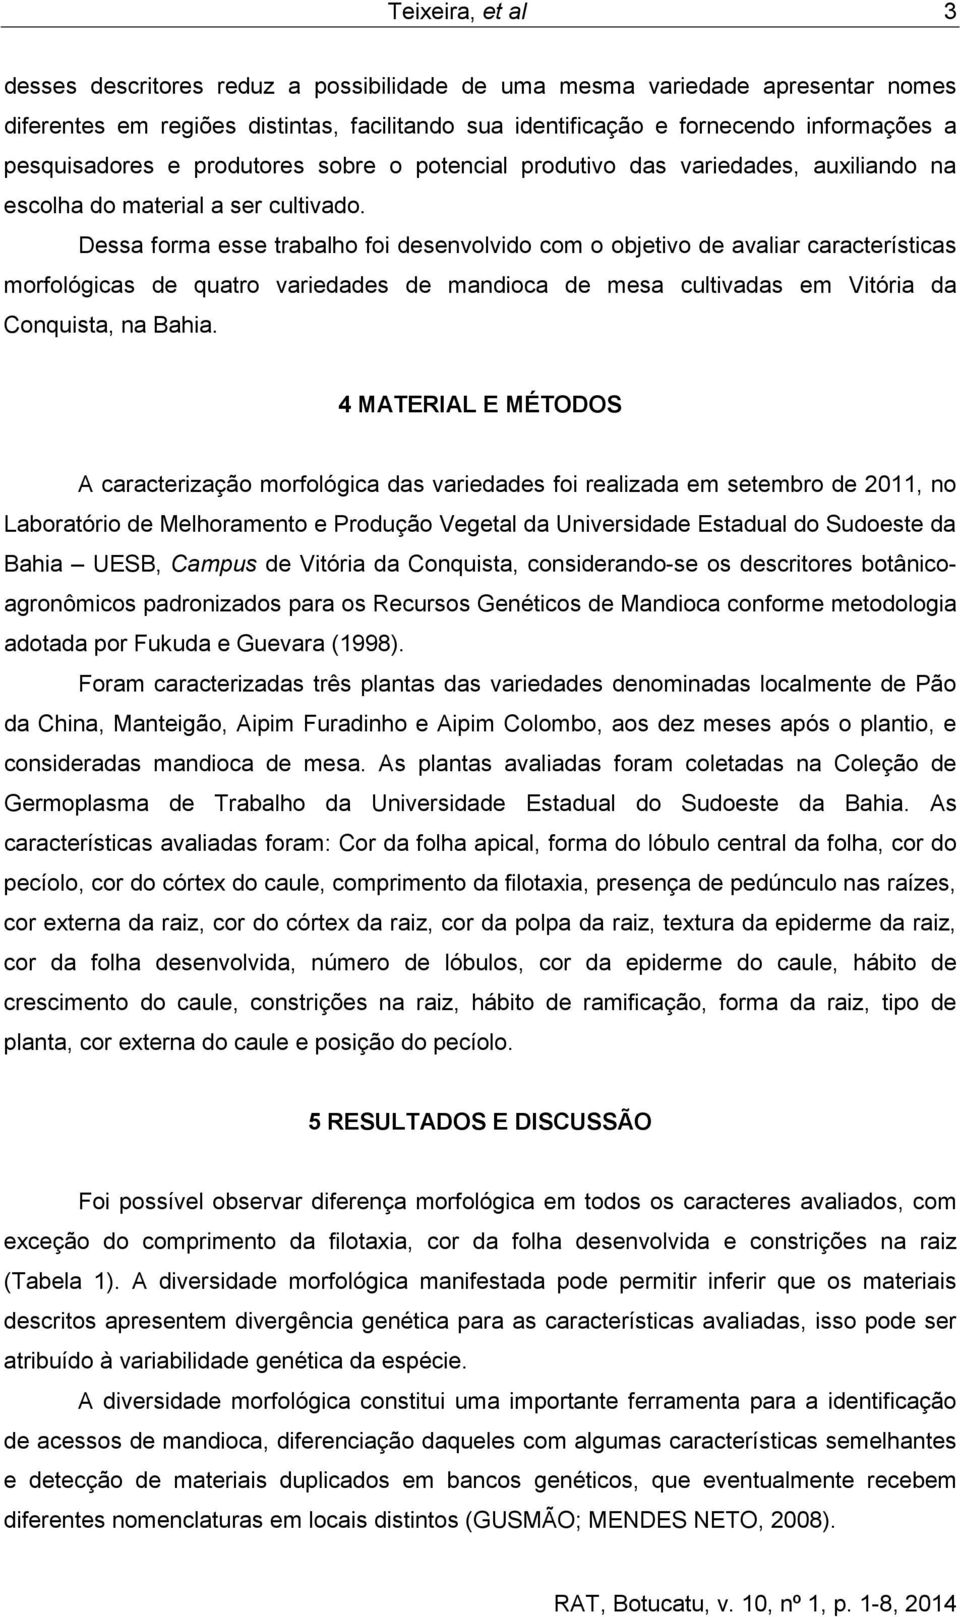 Dessa forma esse trabalho foi desenvolvido com o objetivo de avaliar características morfológicas de quatro variedades de mandioca de mesa cultivadas em Vitória da Conquista, na Bahia.